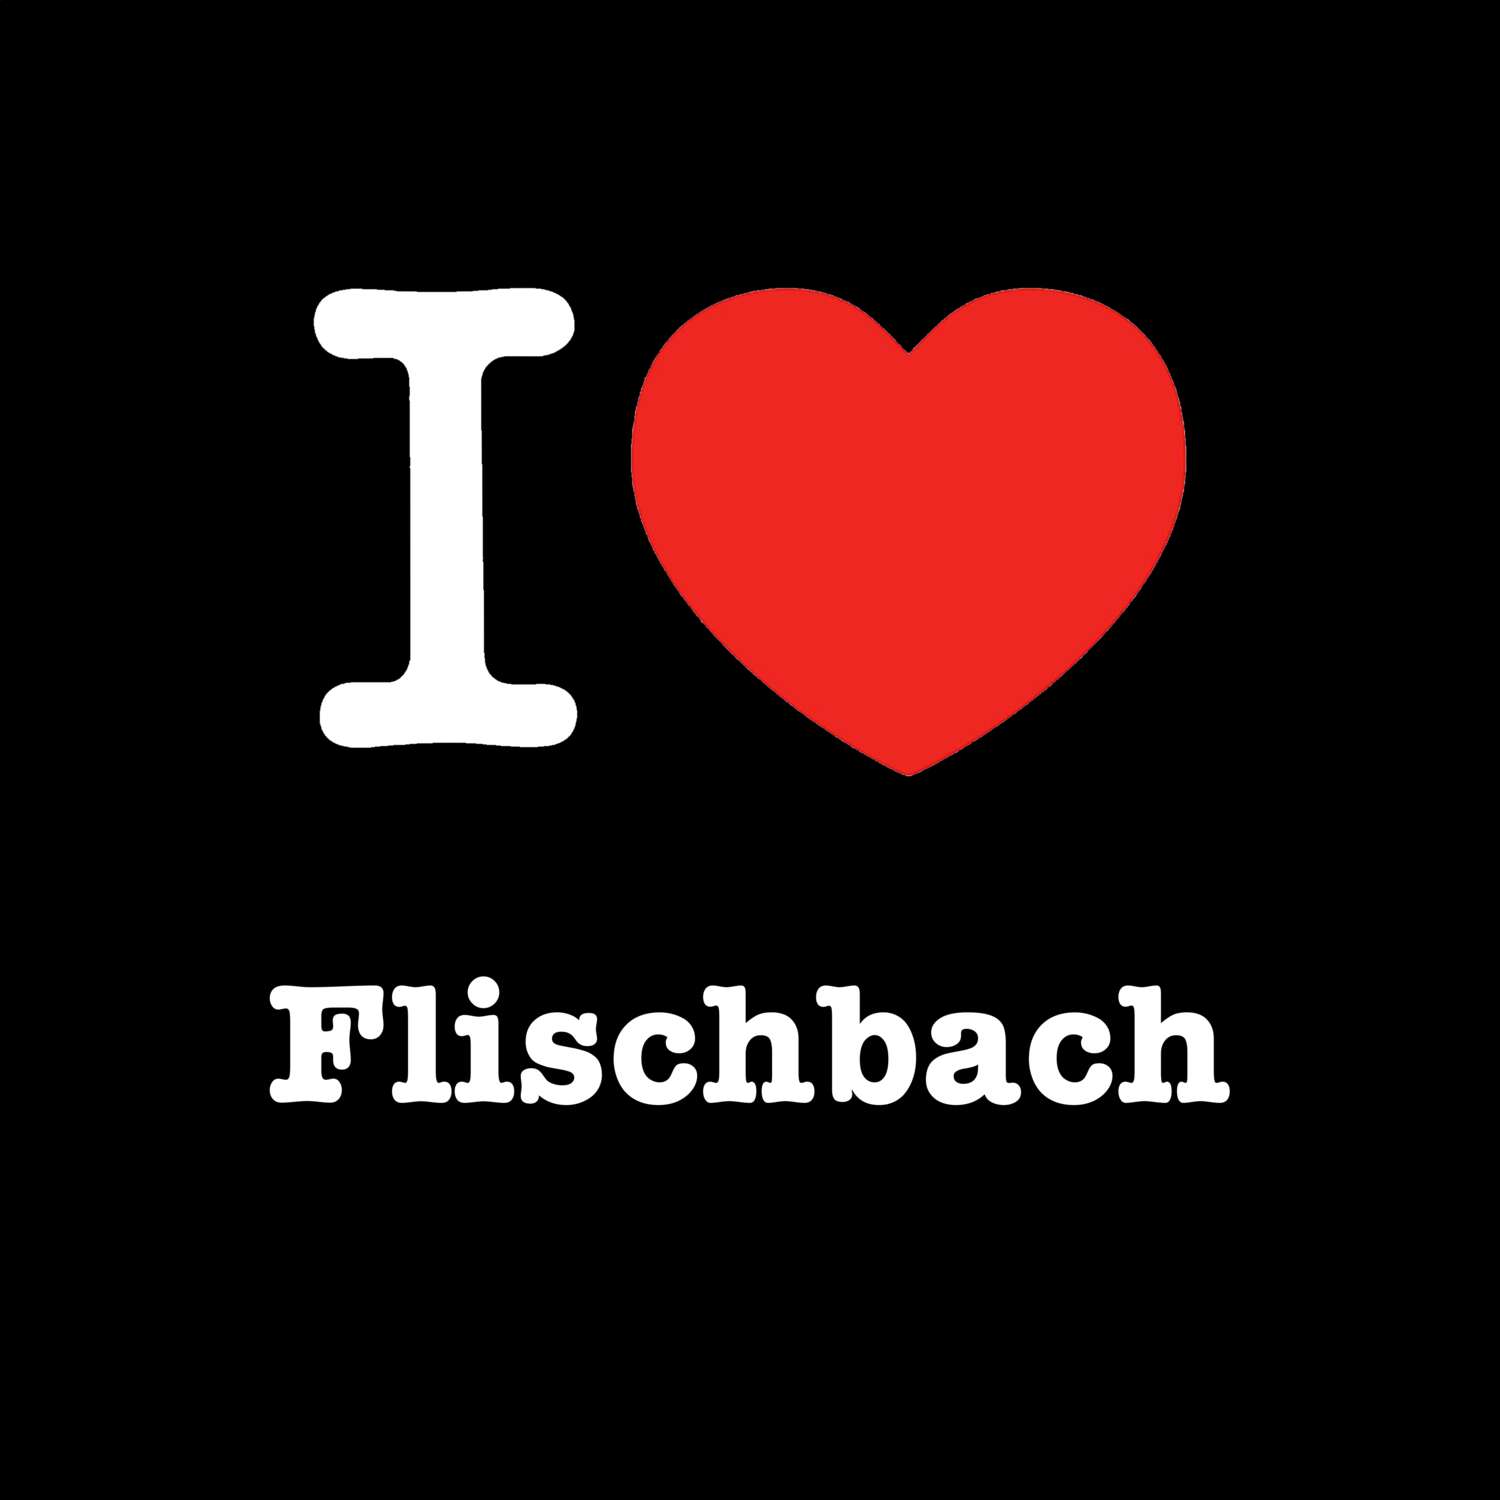 Flischbach T-Shirt »I love«